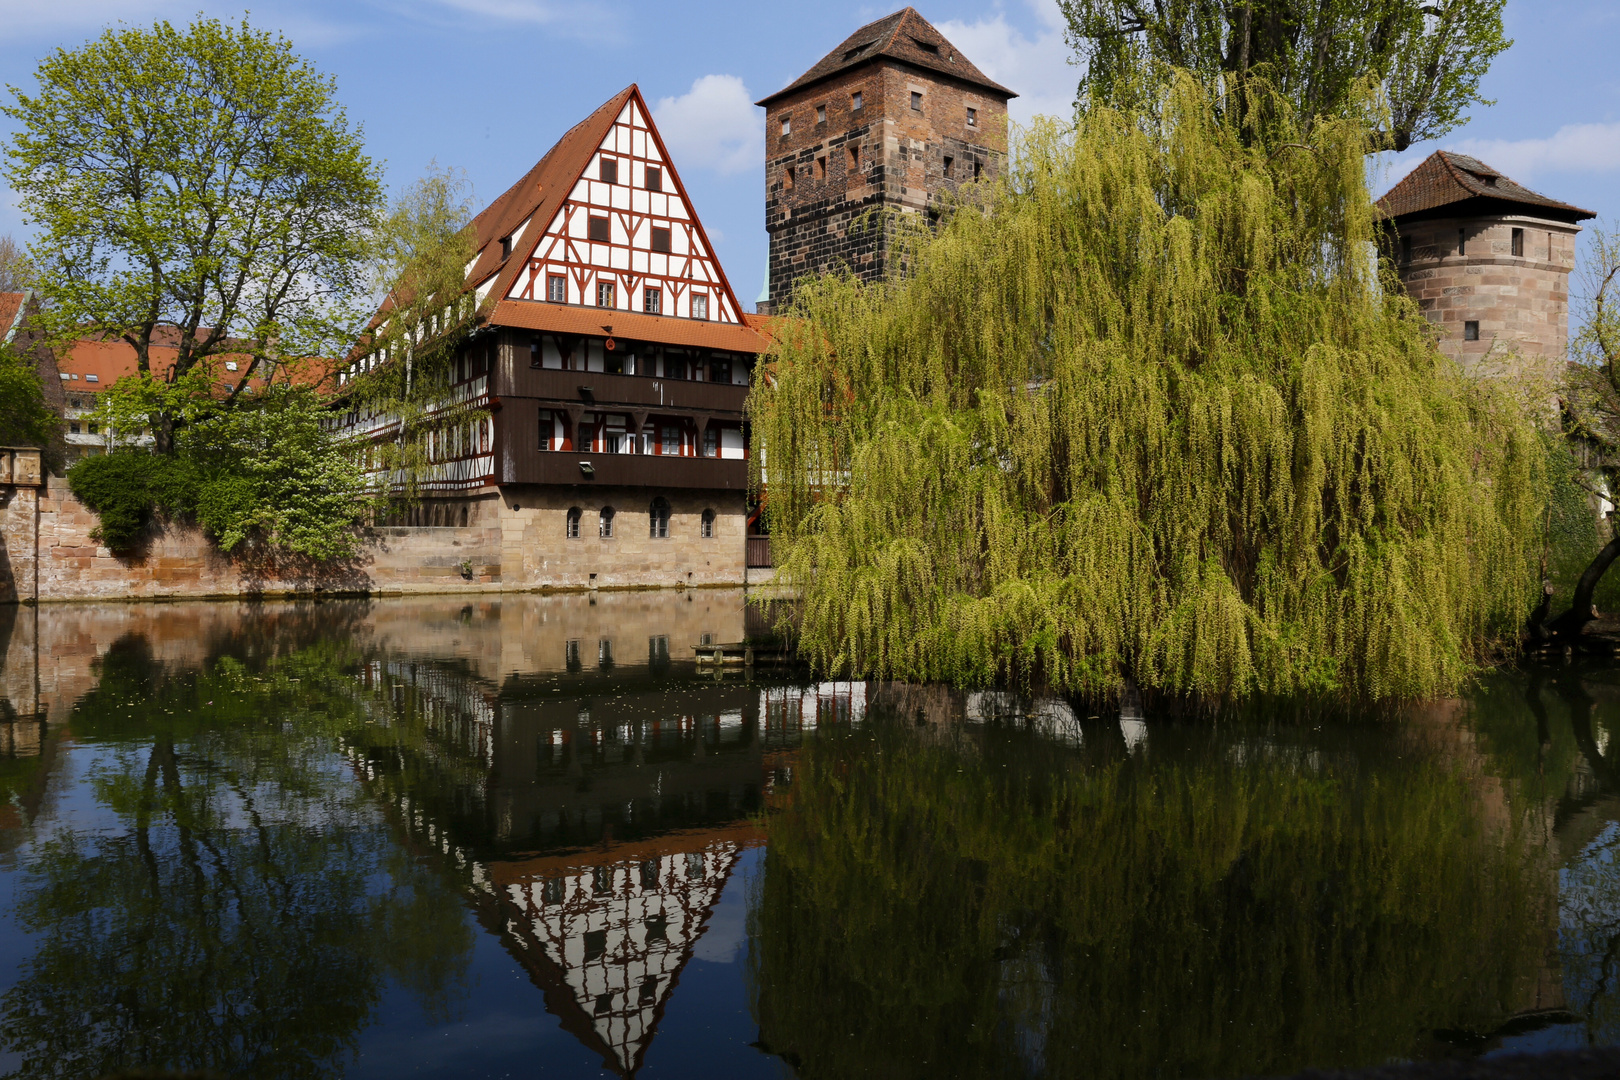 Weinstadl und Wasserturm in Nürnberg